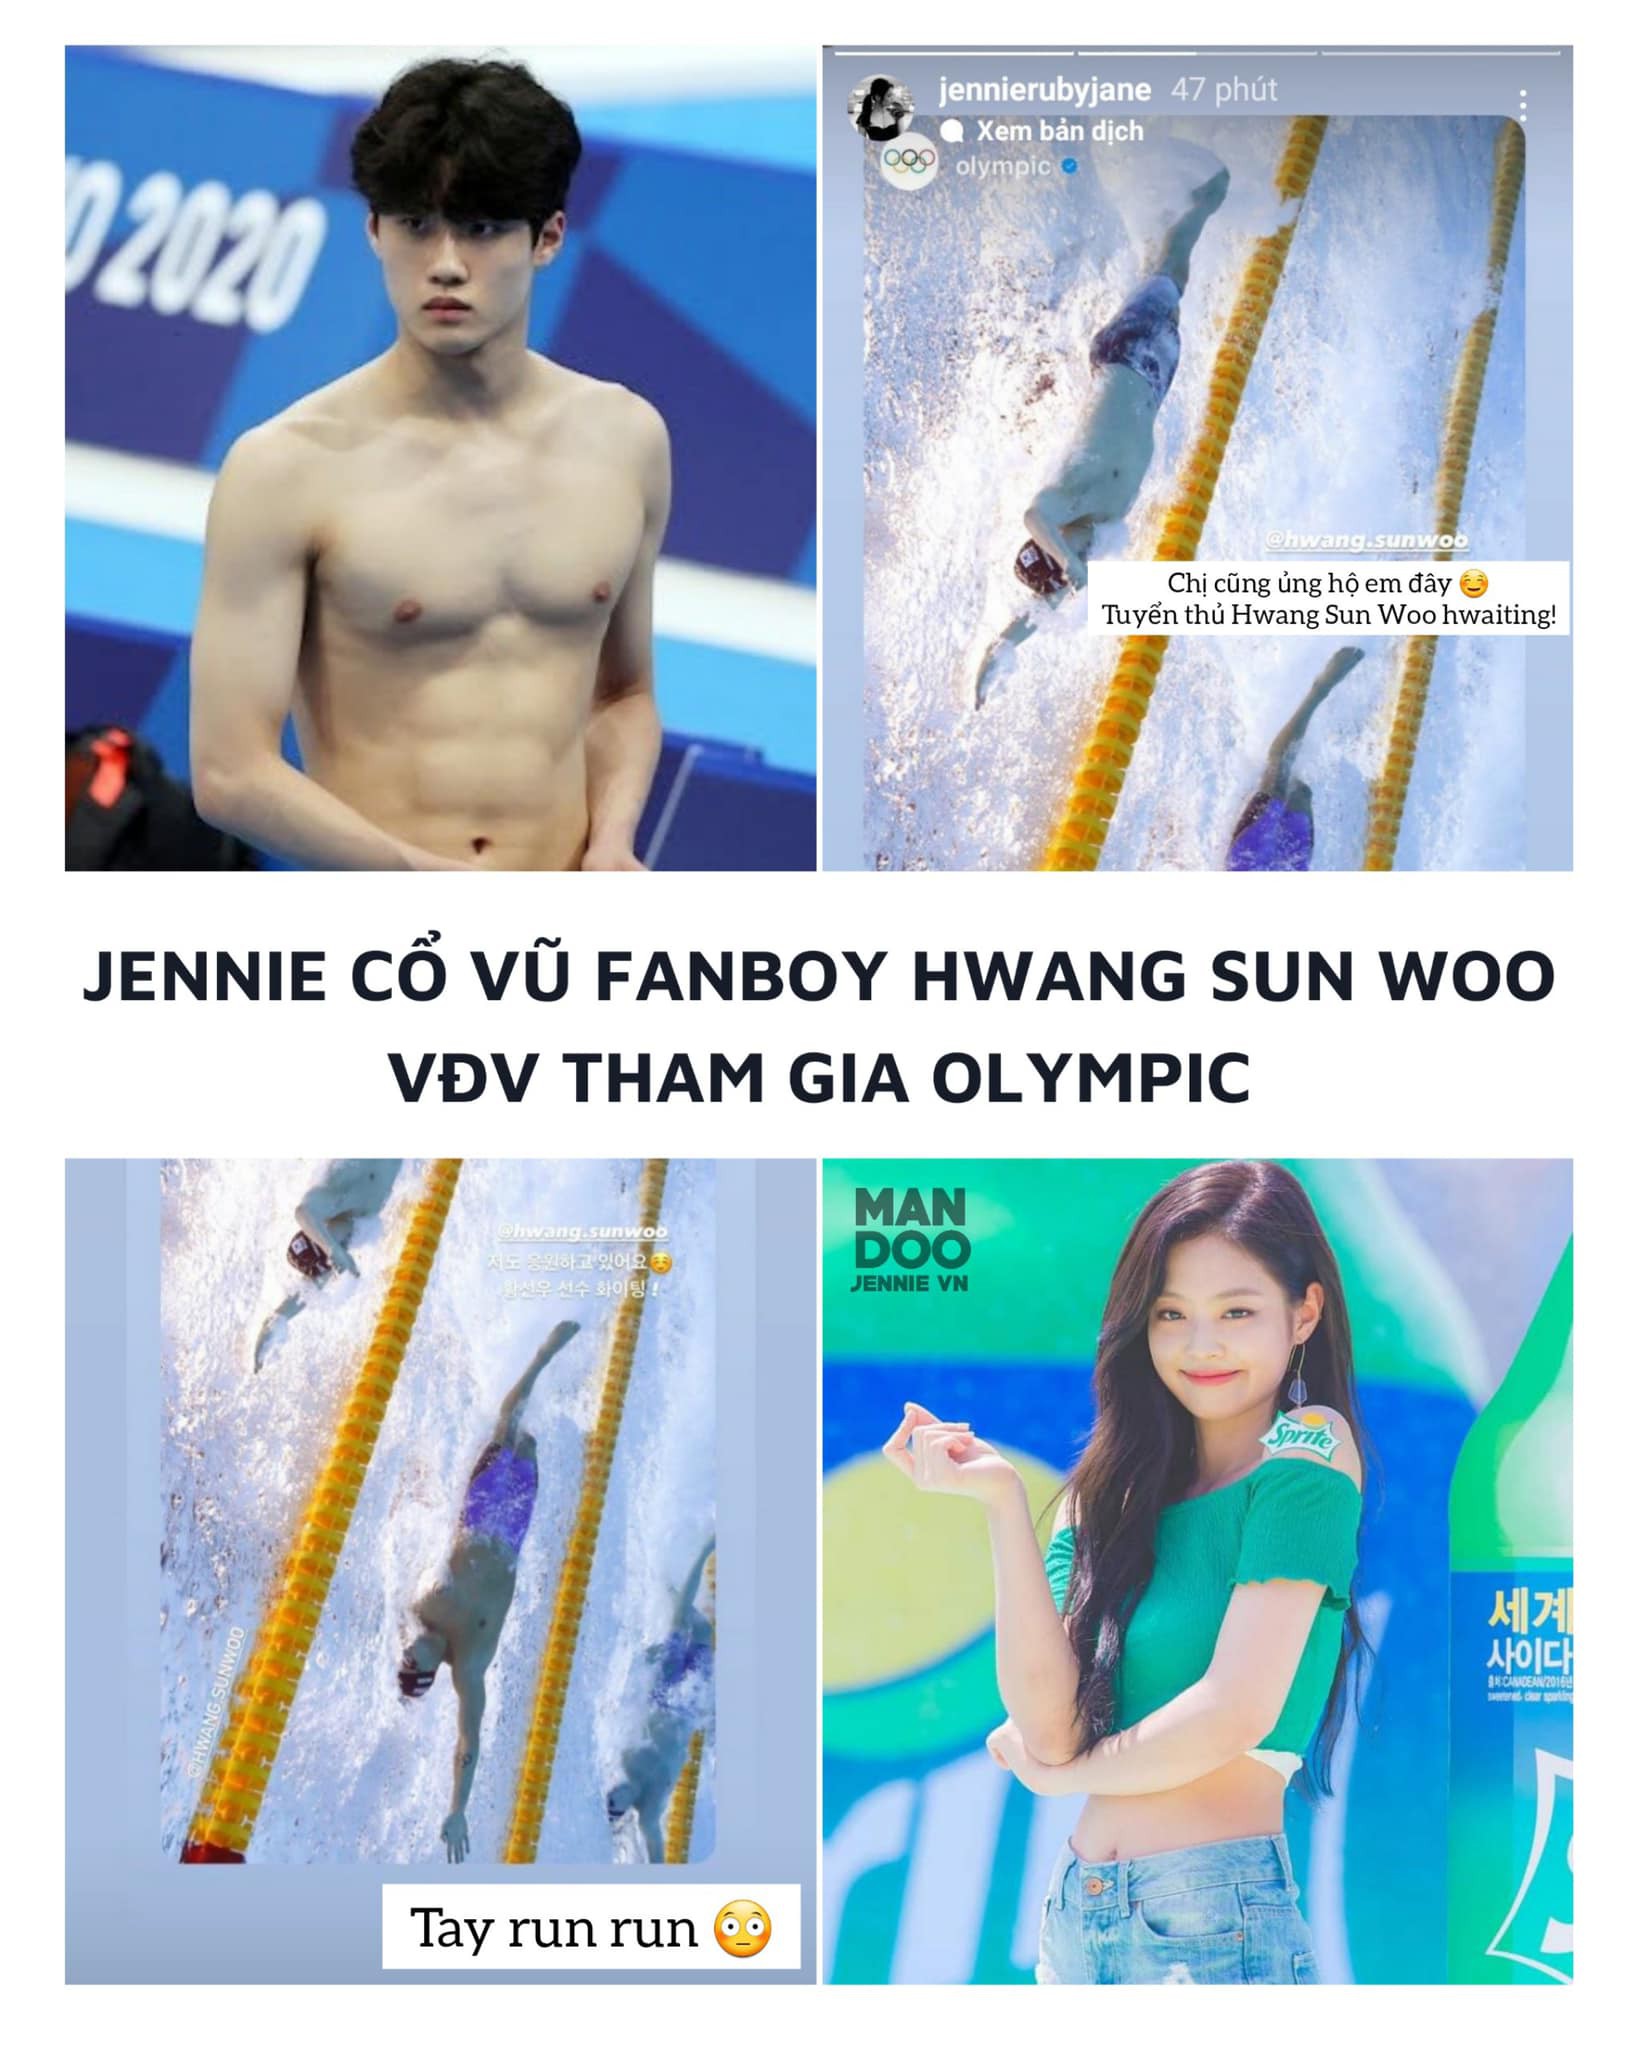 JENNIE BLACKPINK cổ vũ fanboy Hwang sun Woo- vận động viên Hàn Quốc tham gia Olympic